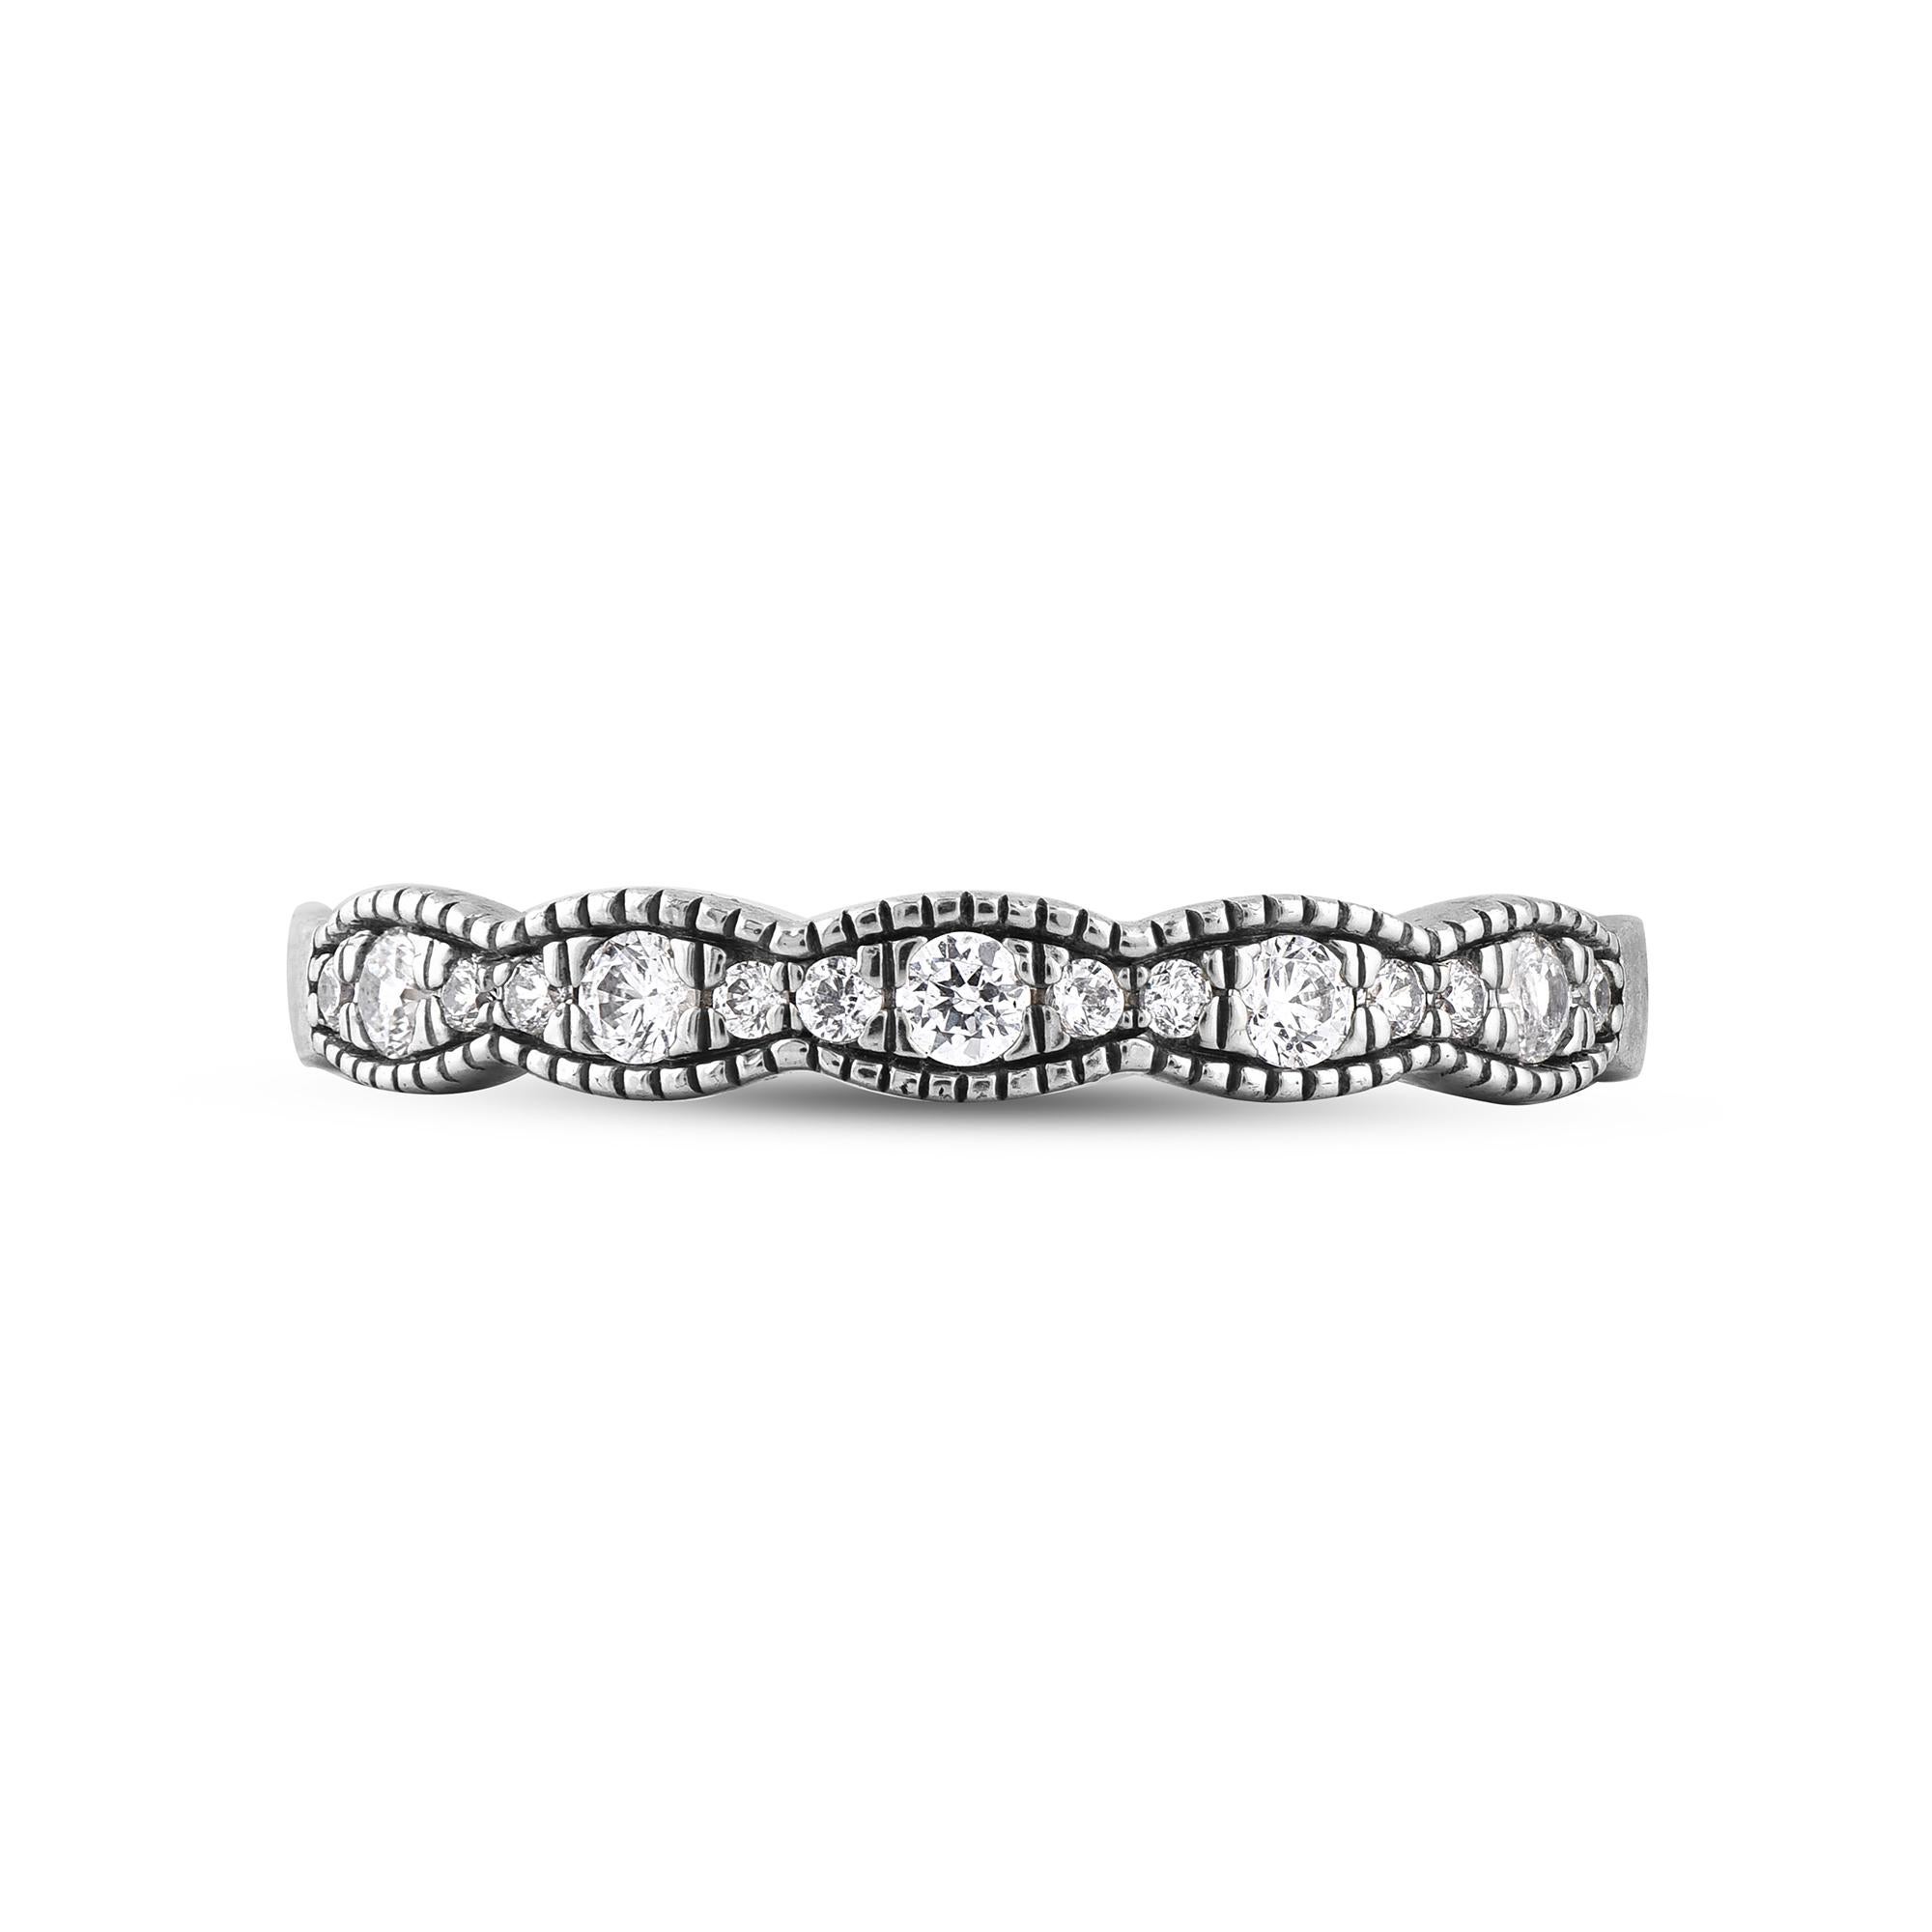 Ehren Sie Ihren besonderen Tag mit diesem außergewöhnlichen Diamantring. Dieser Ring ist mit 15 funkelnden Diamanten im Brillantschliff in Zackenfassung besetzt. Das Gesamtgewicht der Diamanten beträgt 0,25 Karat. Die Diamanten sind mit der Farbe